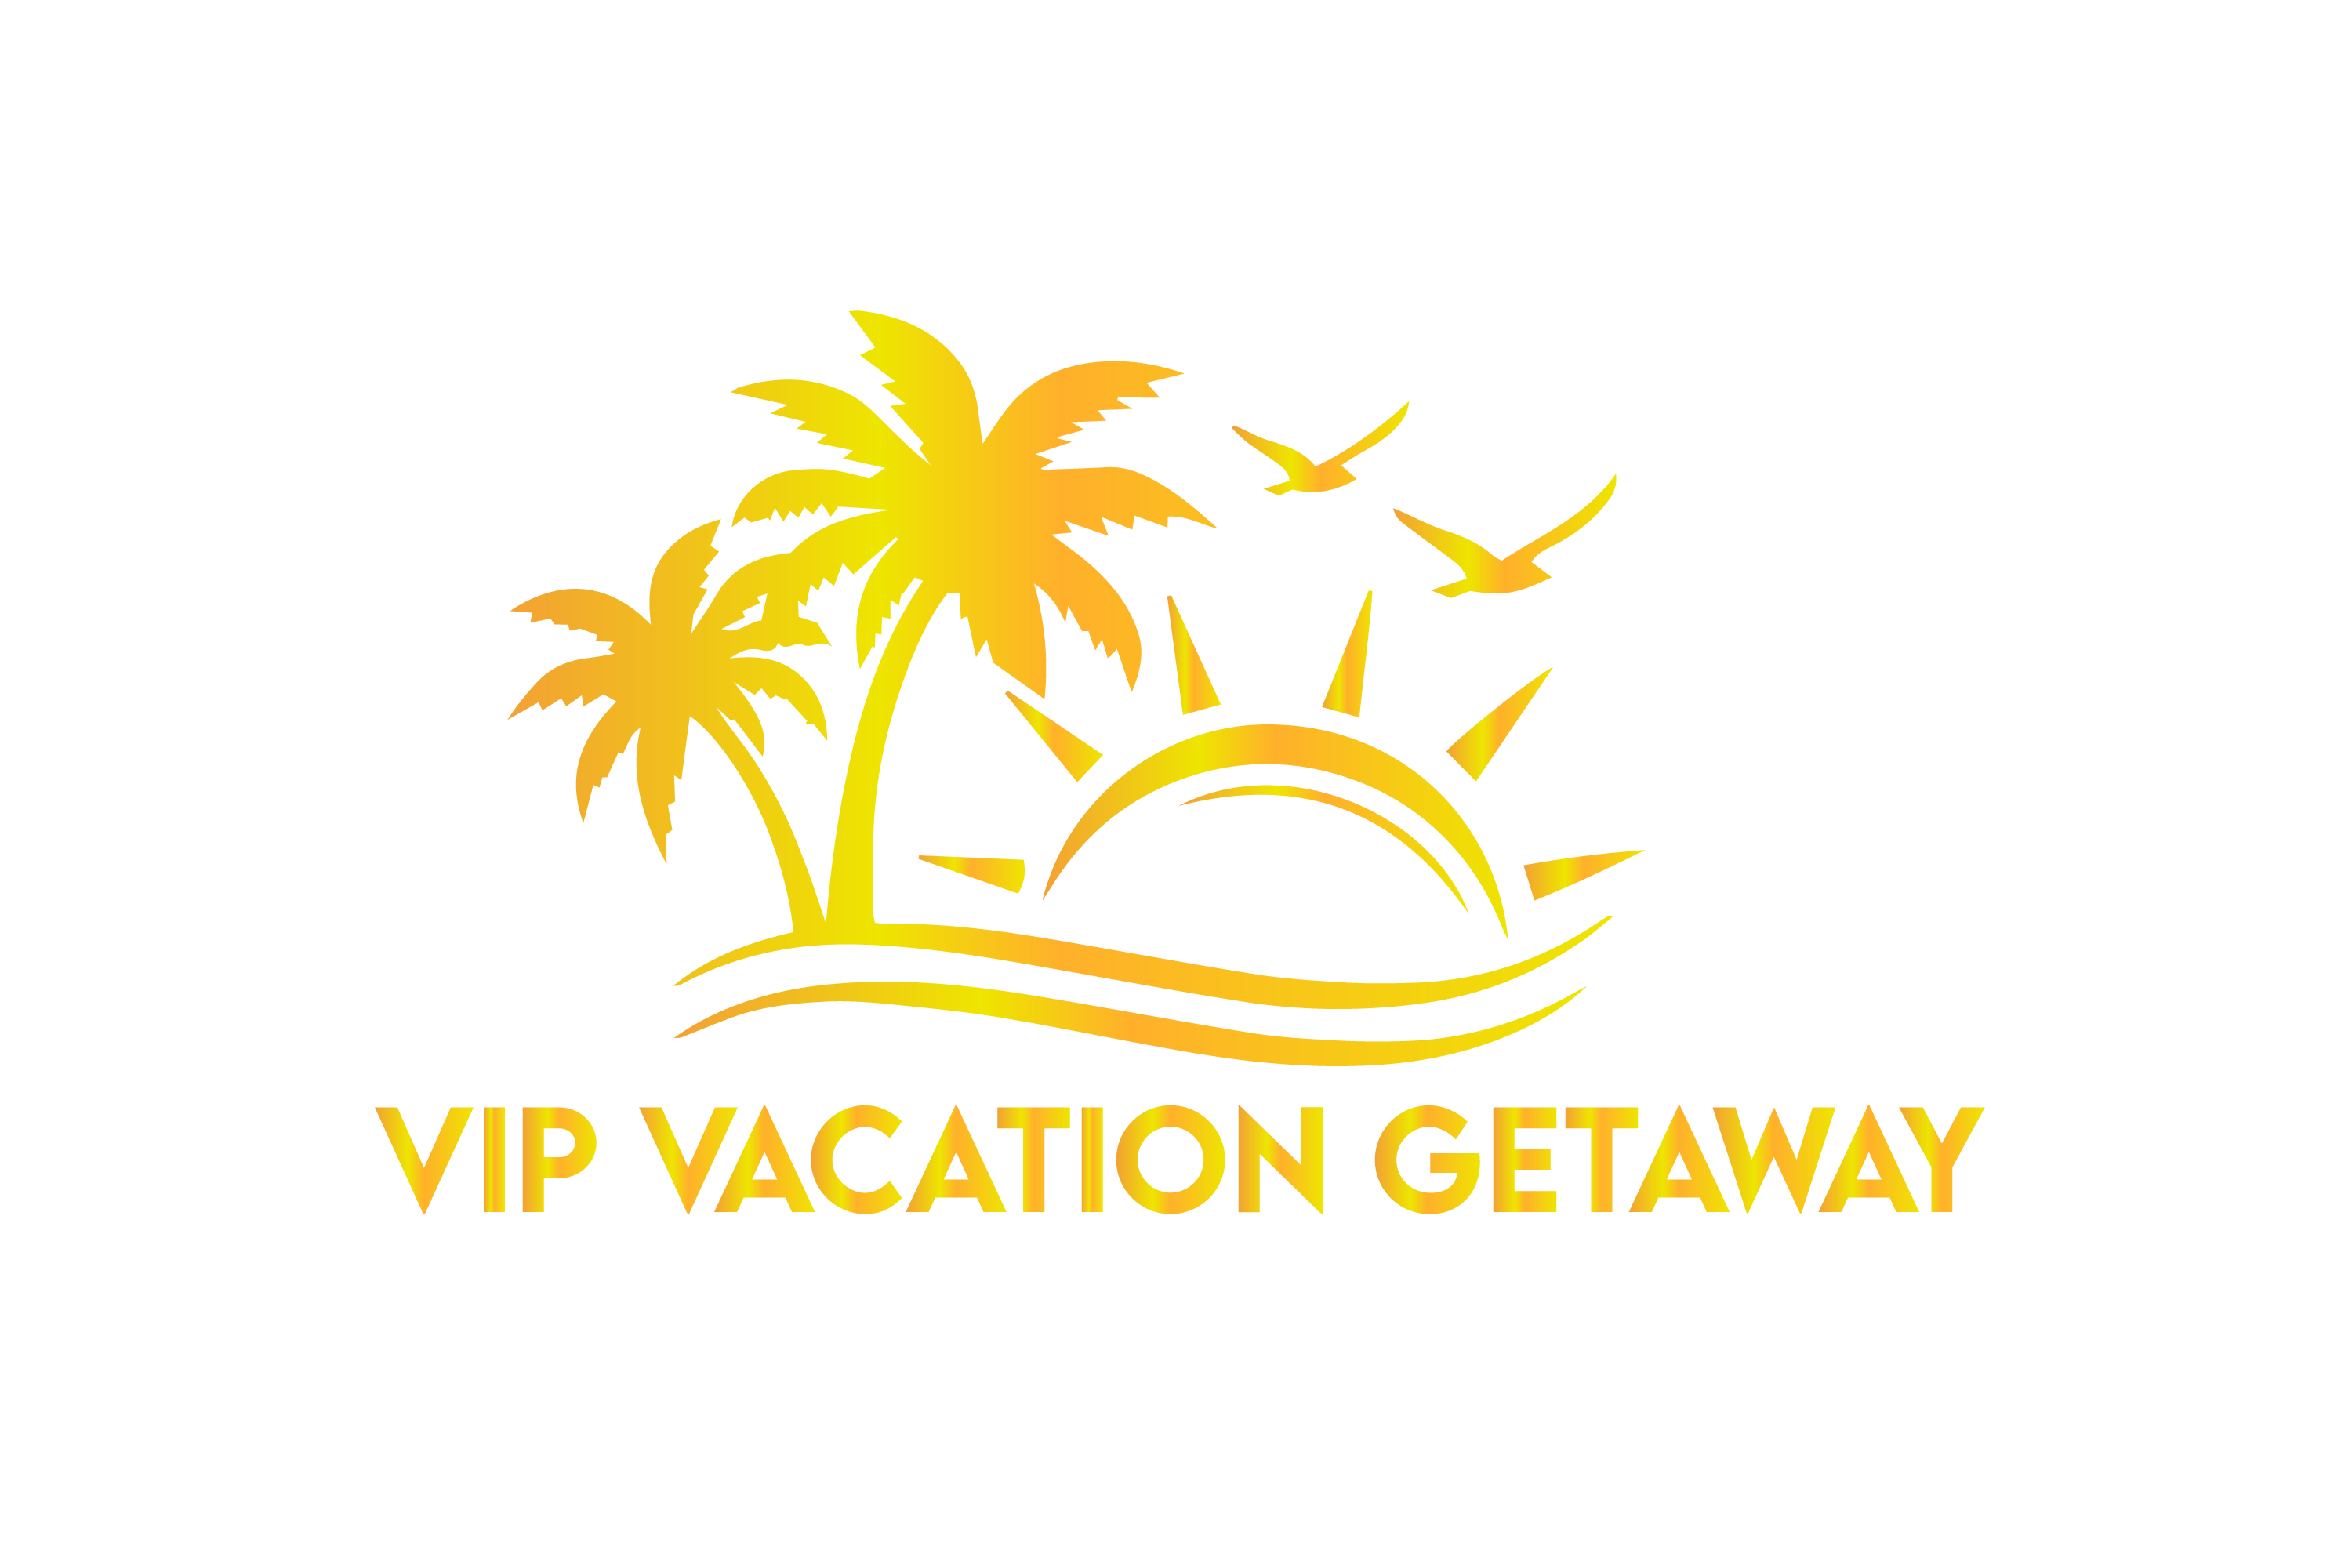 VIP VACATION GETAWAY